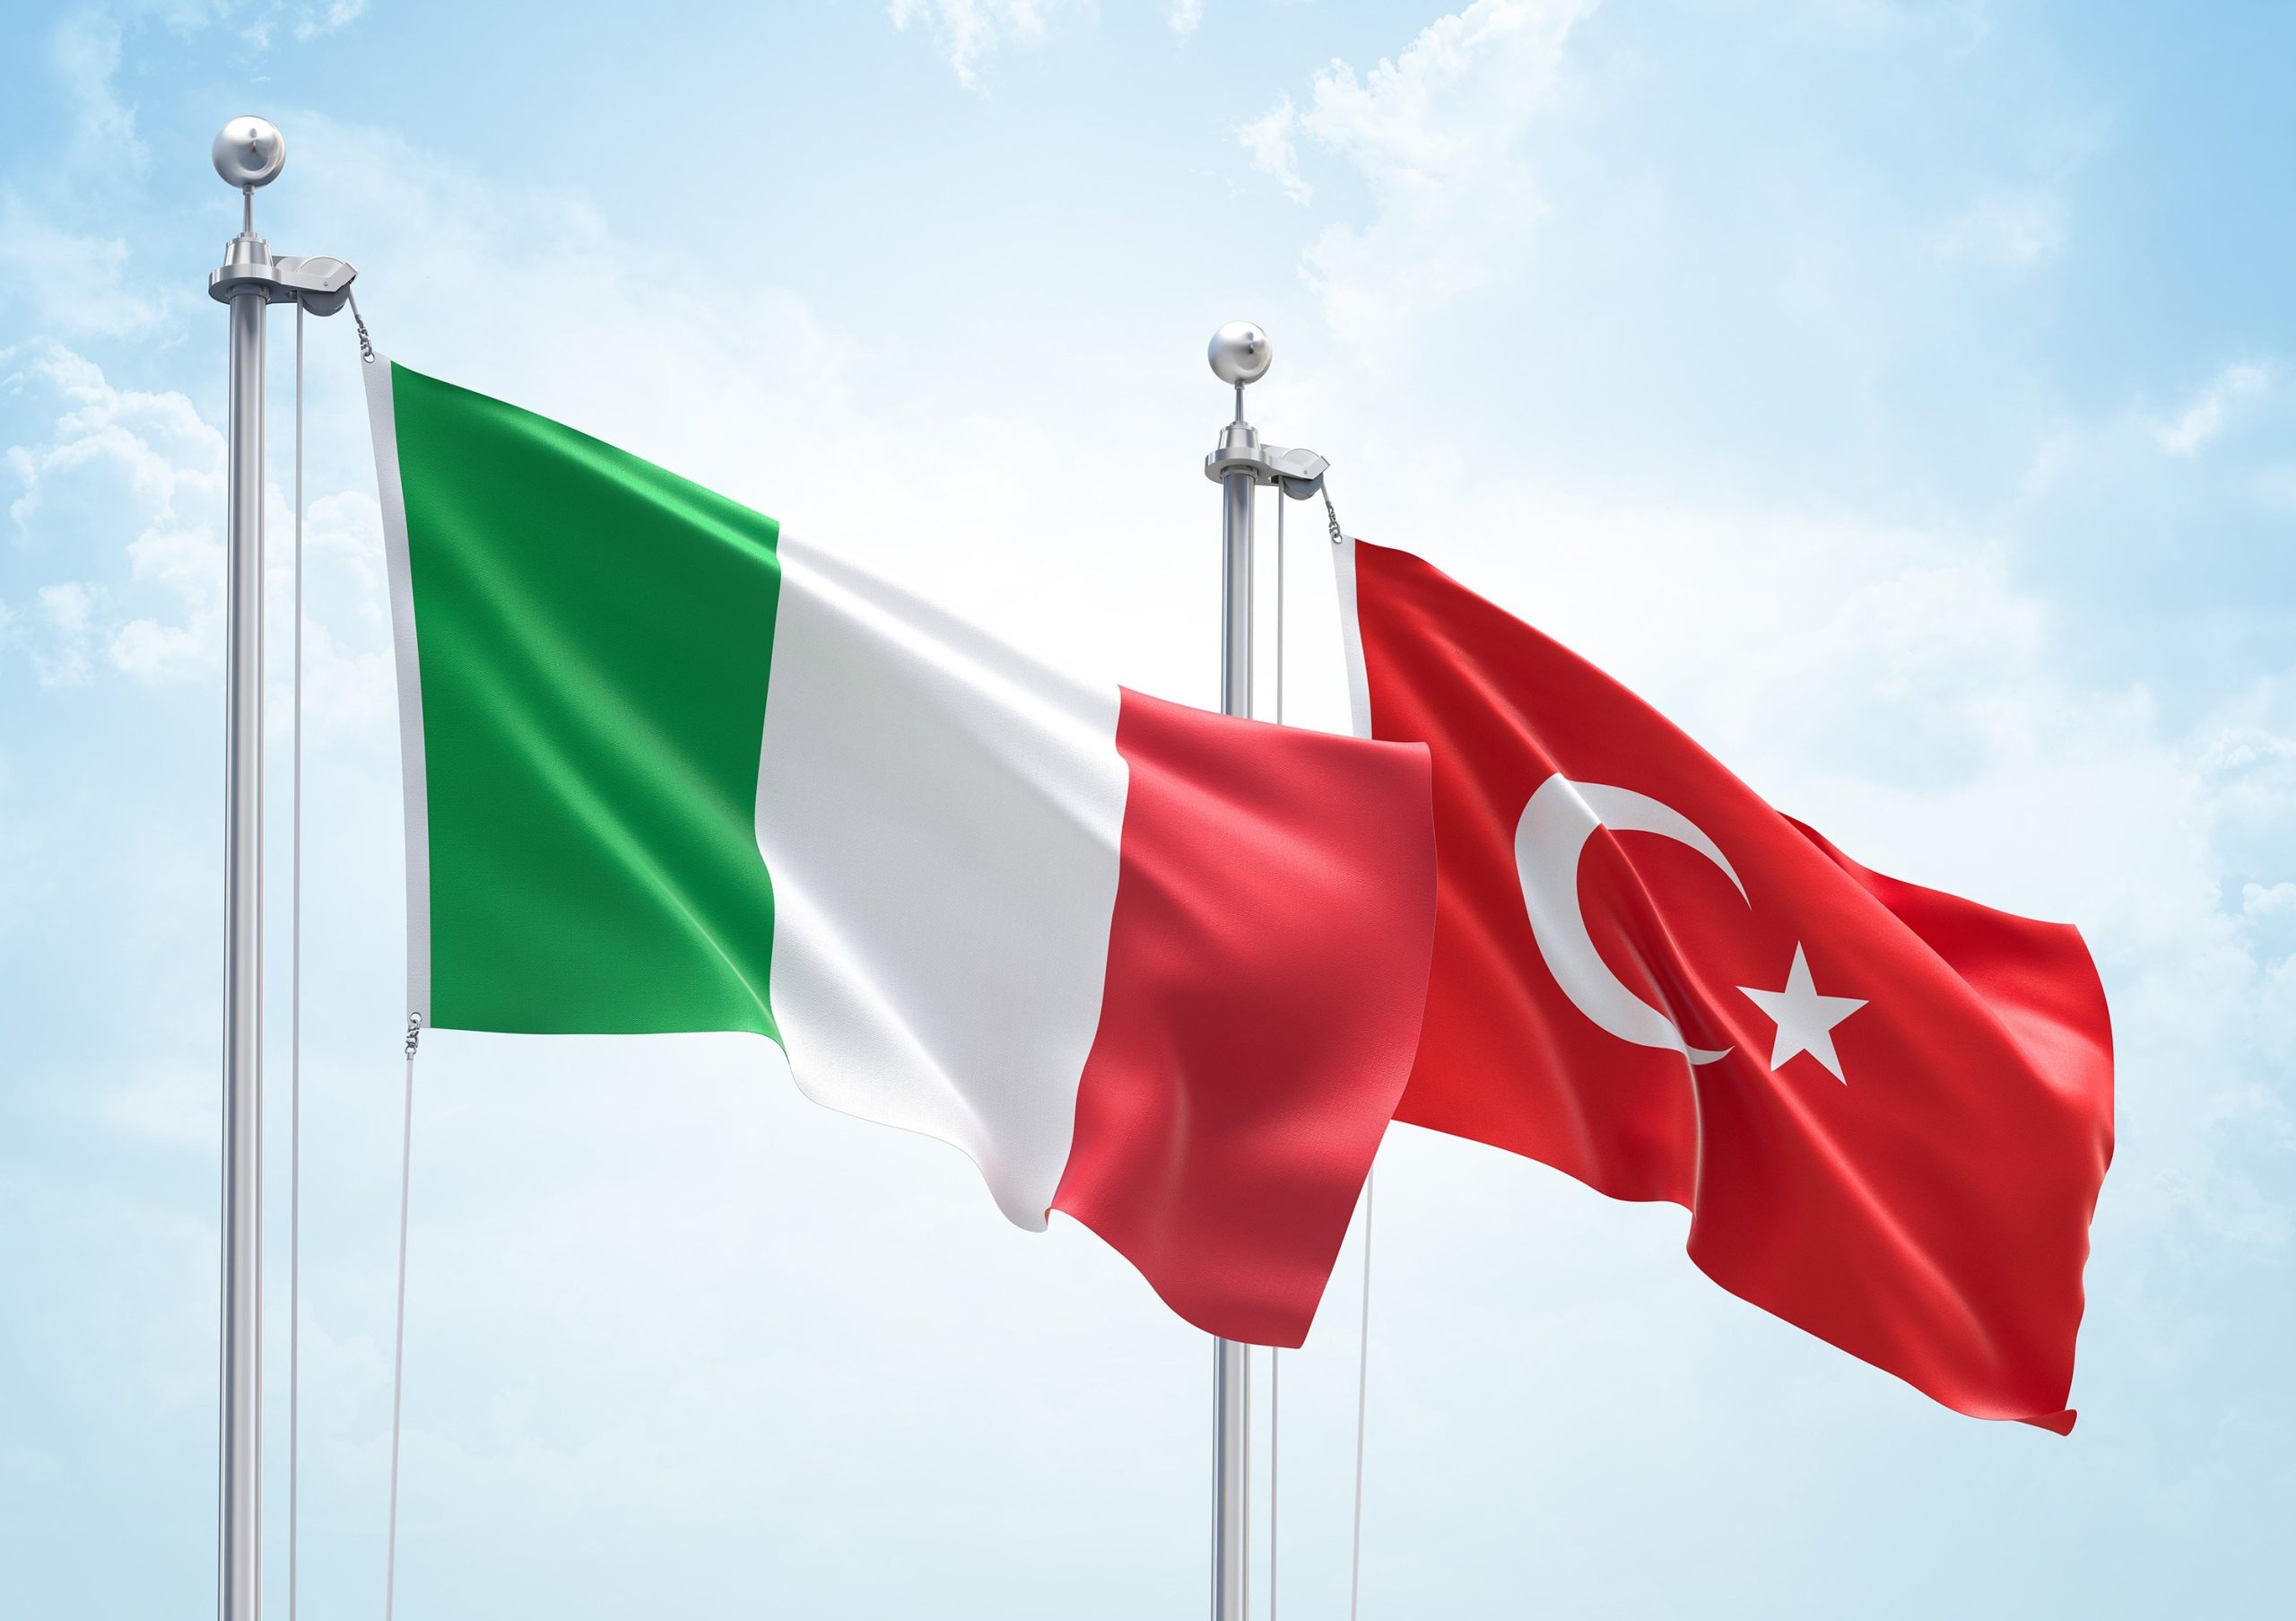 Κυβέρνηση: Περιμένει κυρώσεις από την ΕΕ – Τουρκία: Αυξάνει κατά 10δις δολ. την εμπορική συμφωνία με την Ιταλία